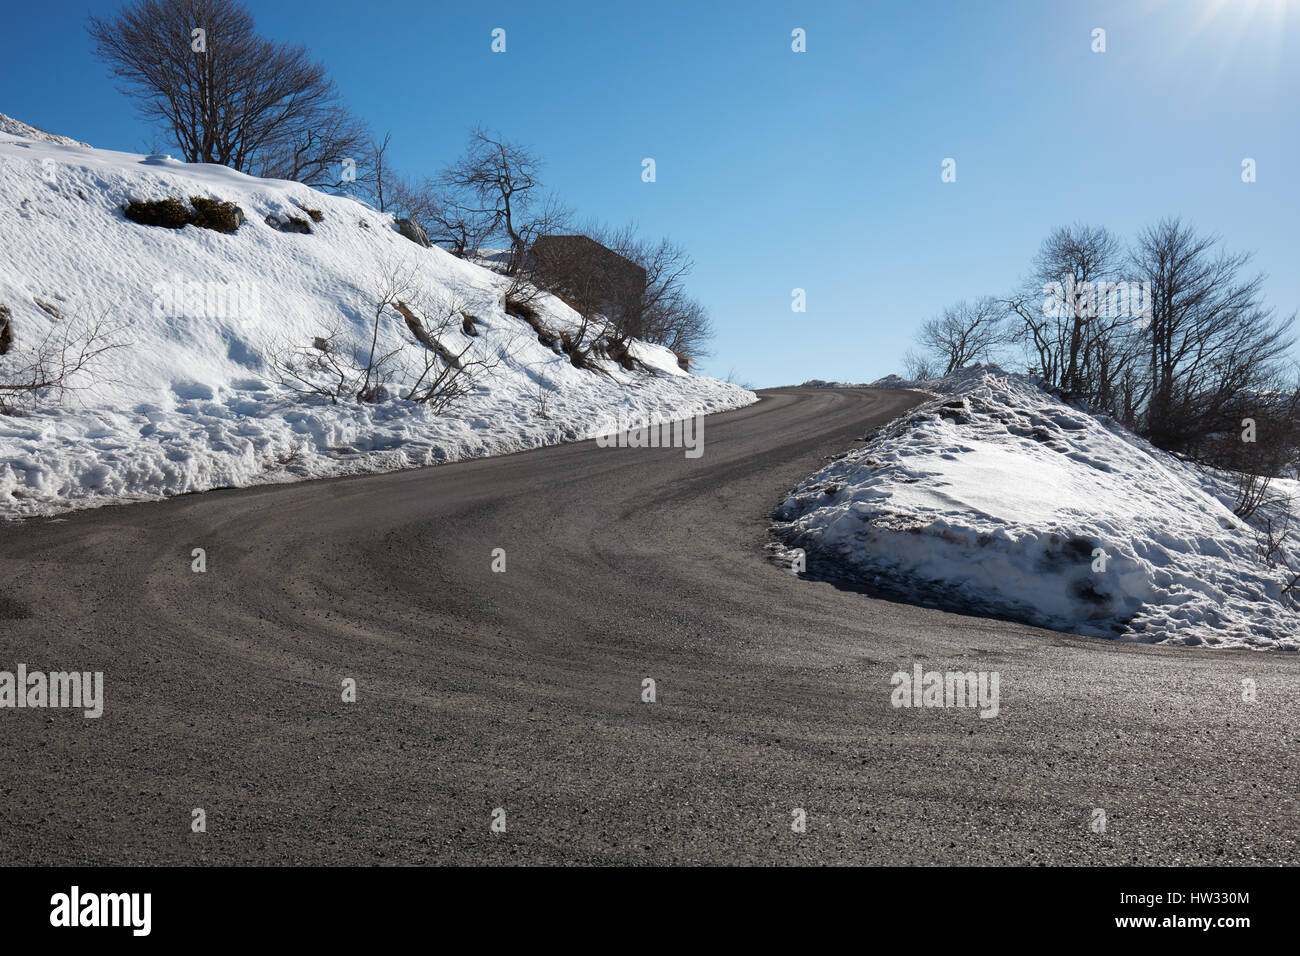 Vide, grande route de montagne avec de la neige sur les côtés, ciel bleu clair dans un hiver ensoleillé Banque D'Images